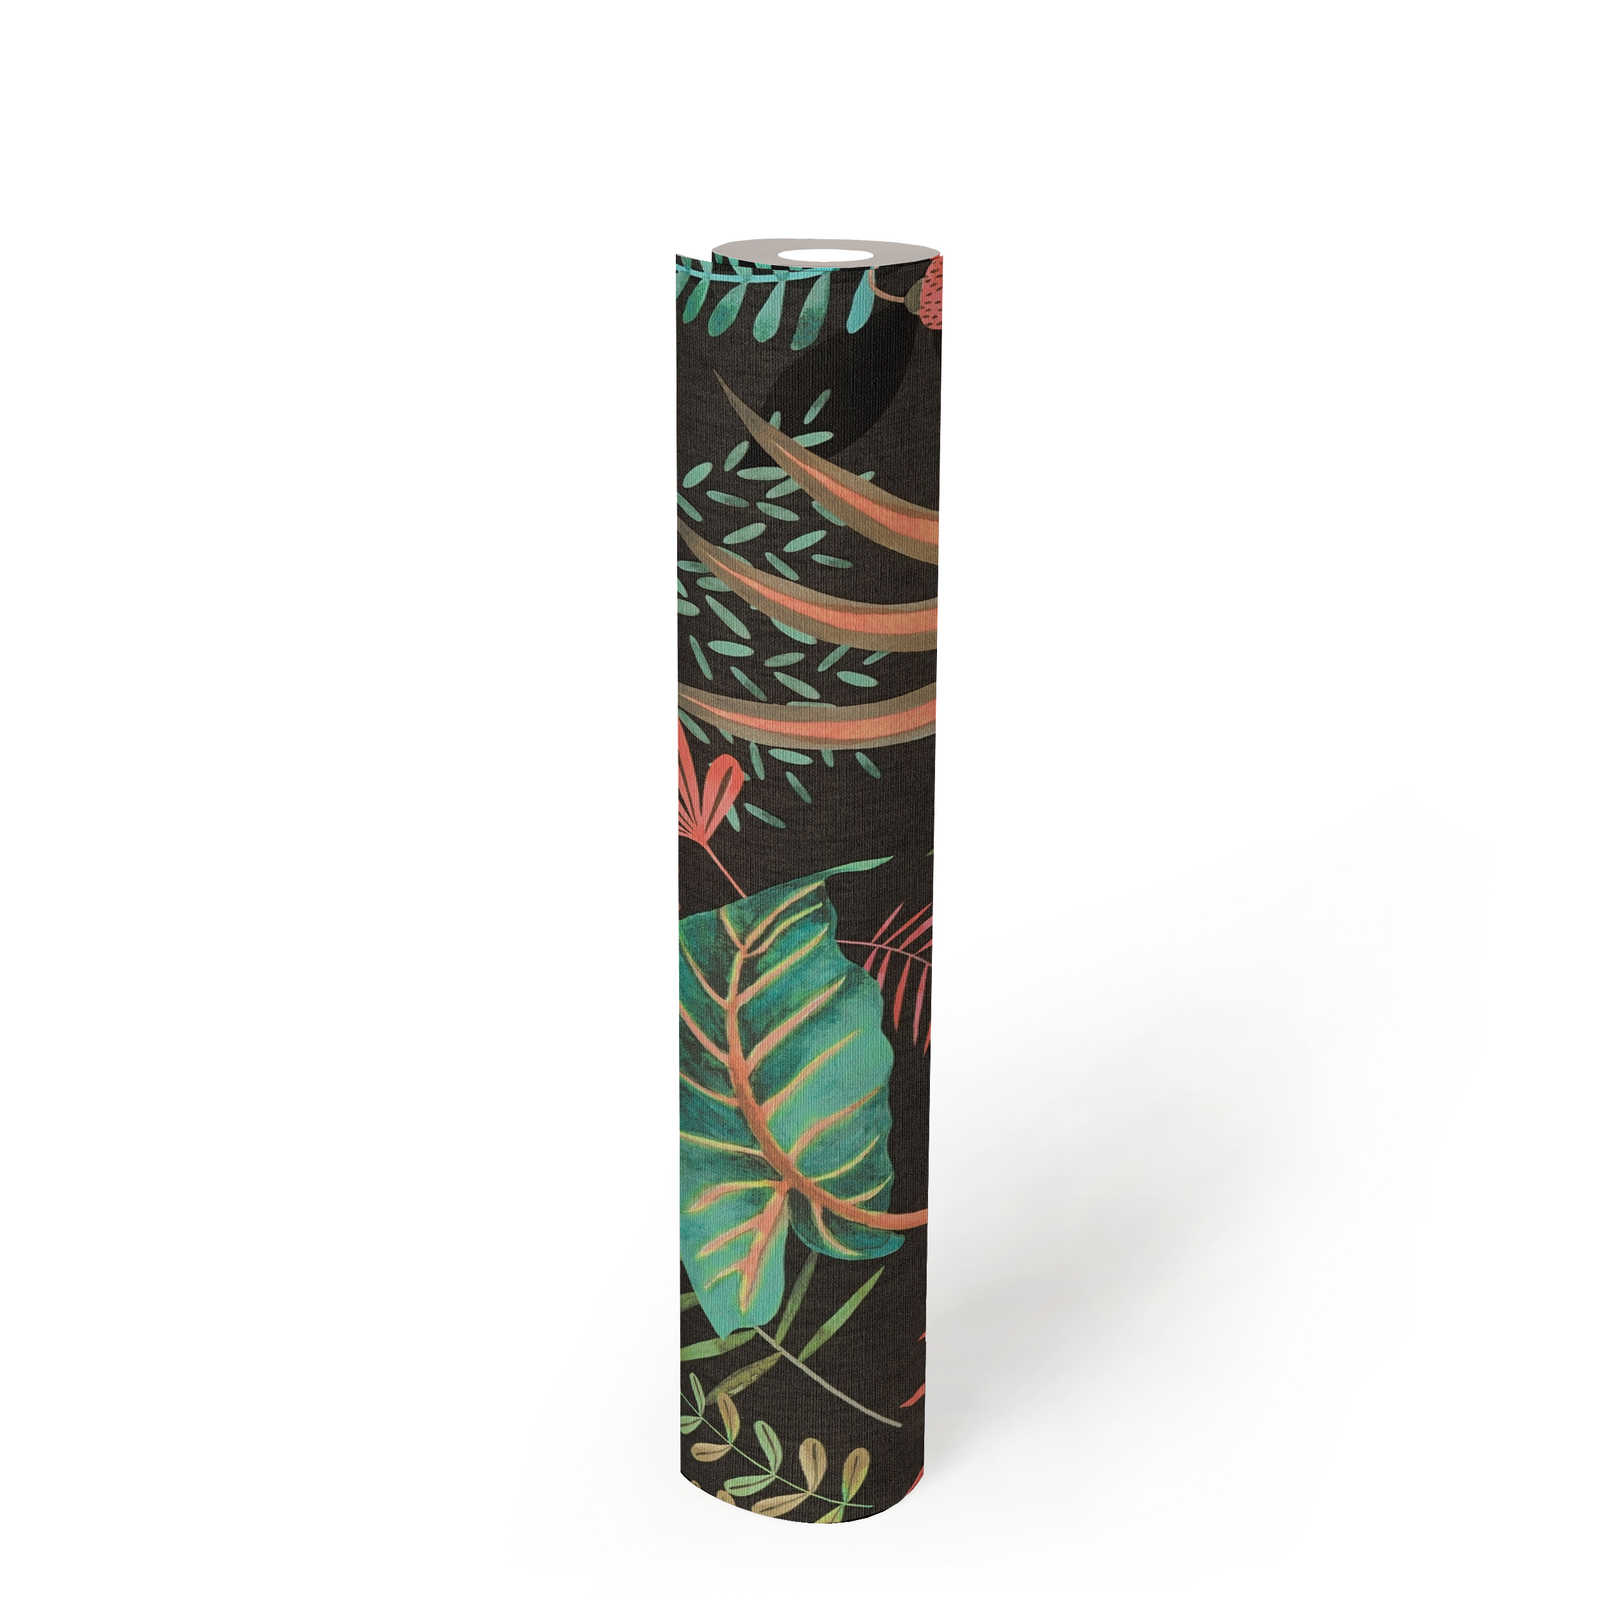             Papel pintado tejido-no tejido floral con mezcla de hojas ligeramente texturizado, mate - negro, multicolor, verde
        